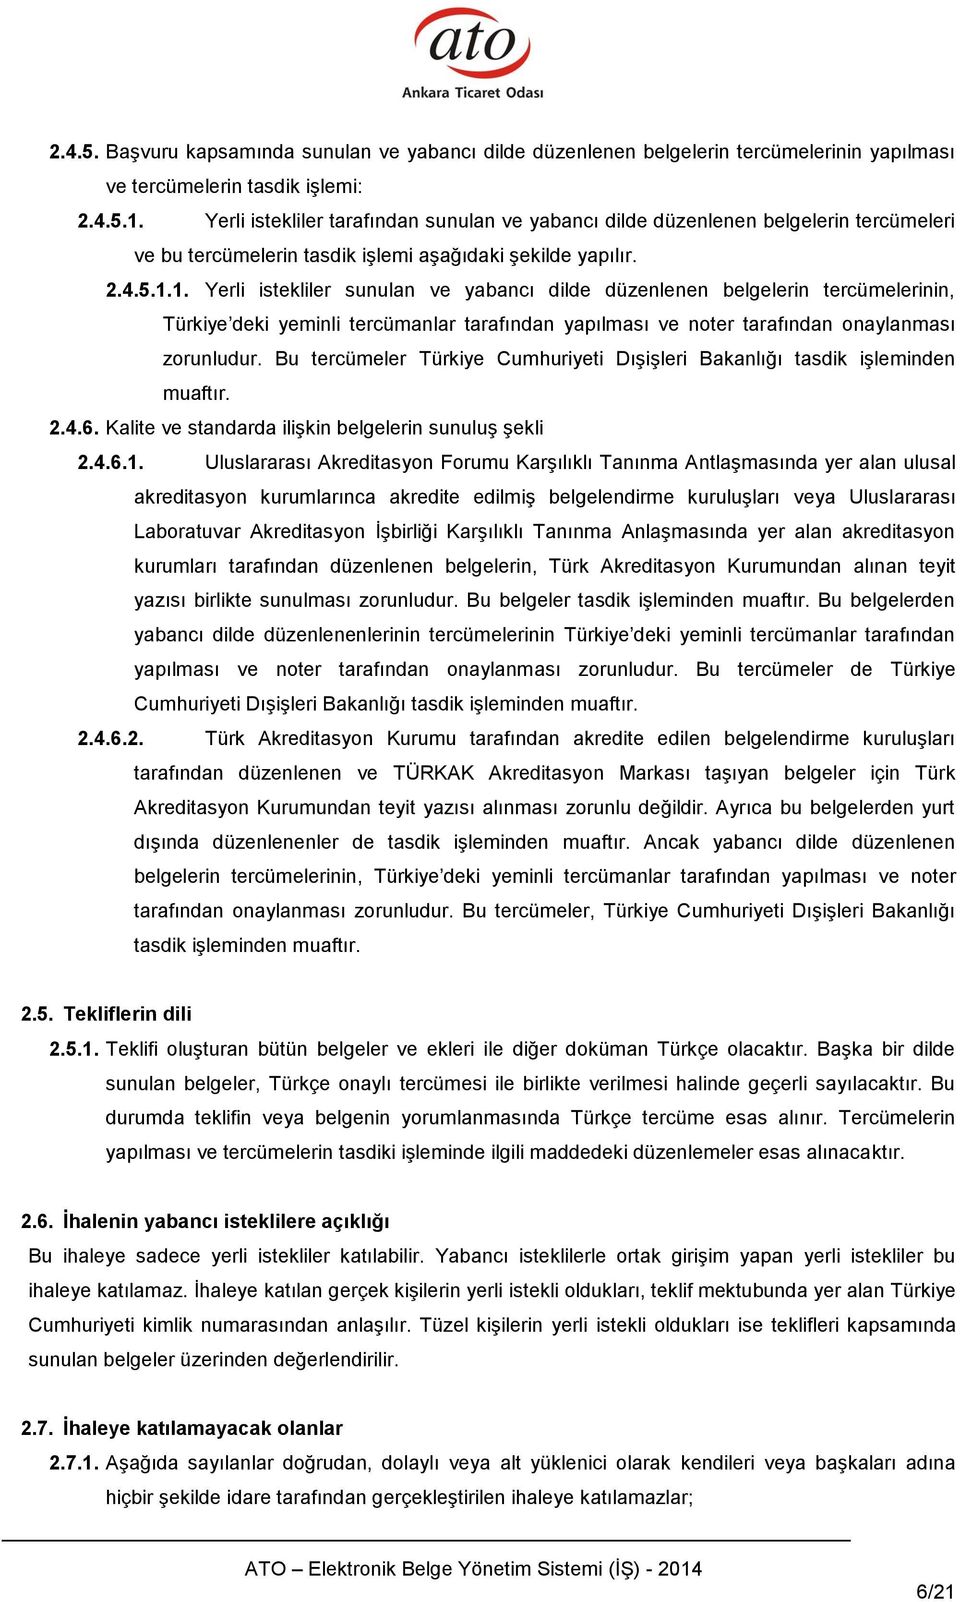 1. Yerli istekliler sunulan ve yabancı dilde düzenlenen belgelerin tercümelerinin, Türkiye deki yeminli tercümanlar tarafından yapılması ve noter tarafından onaylanması zorunludur.